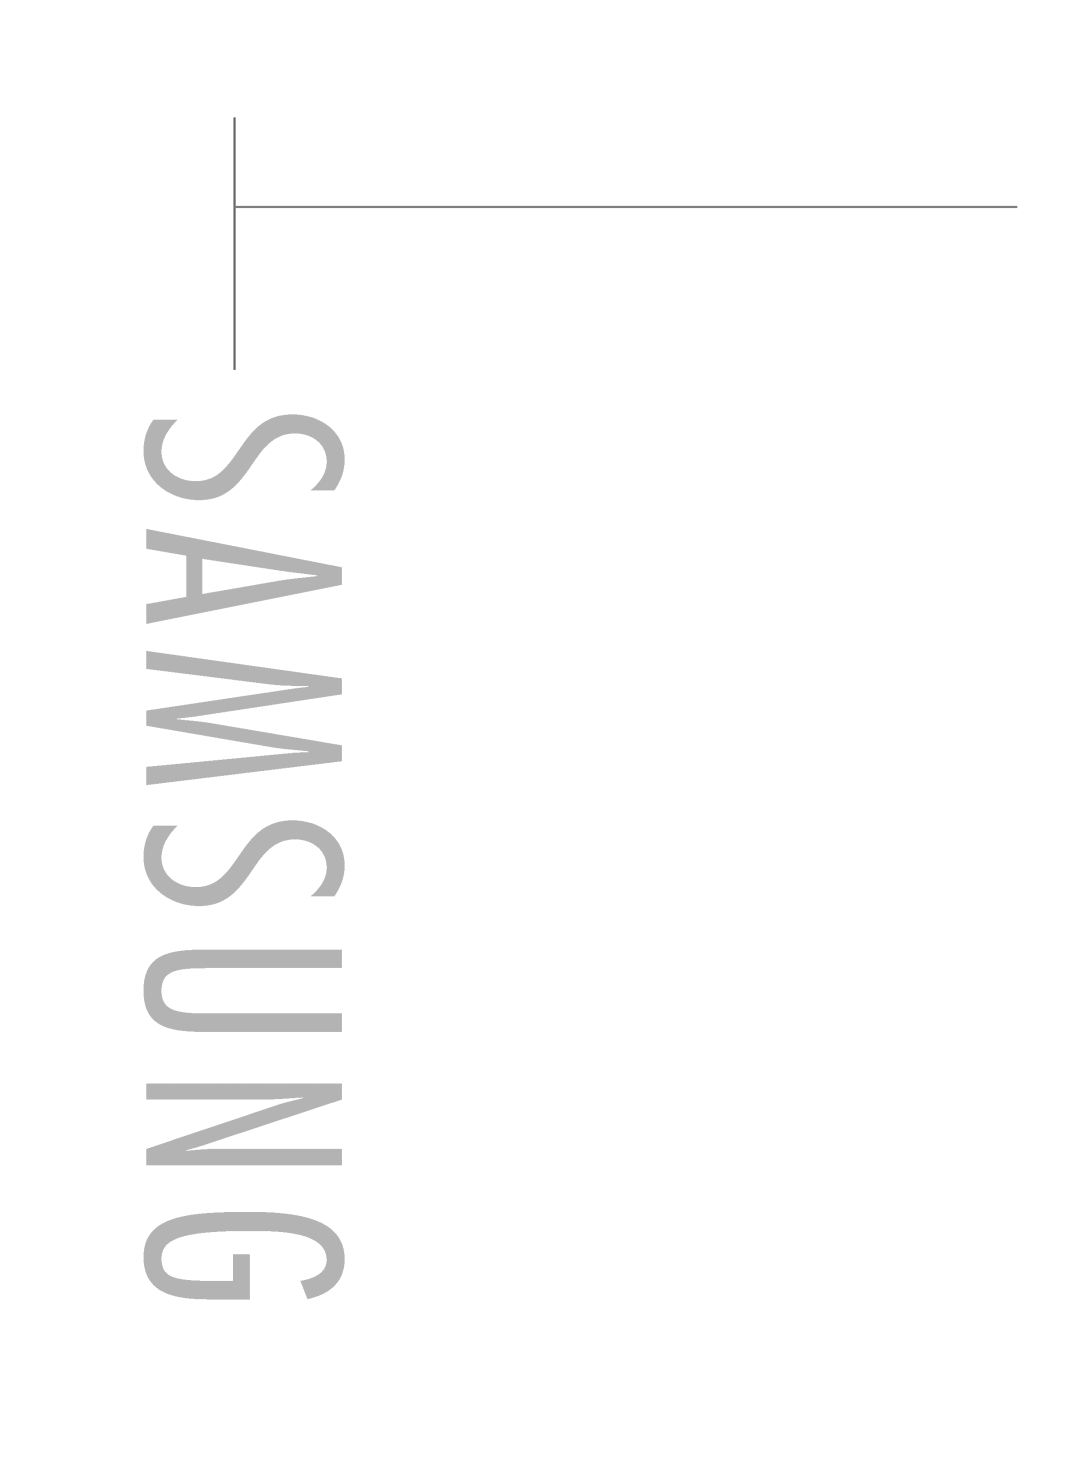 Samsung HL-R5688W manual S A M S U N G 